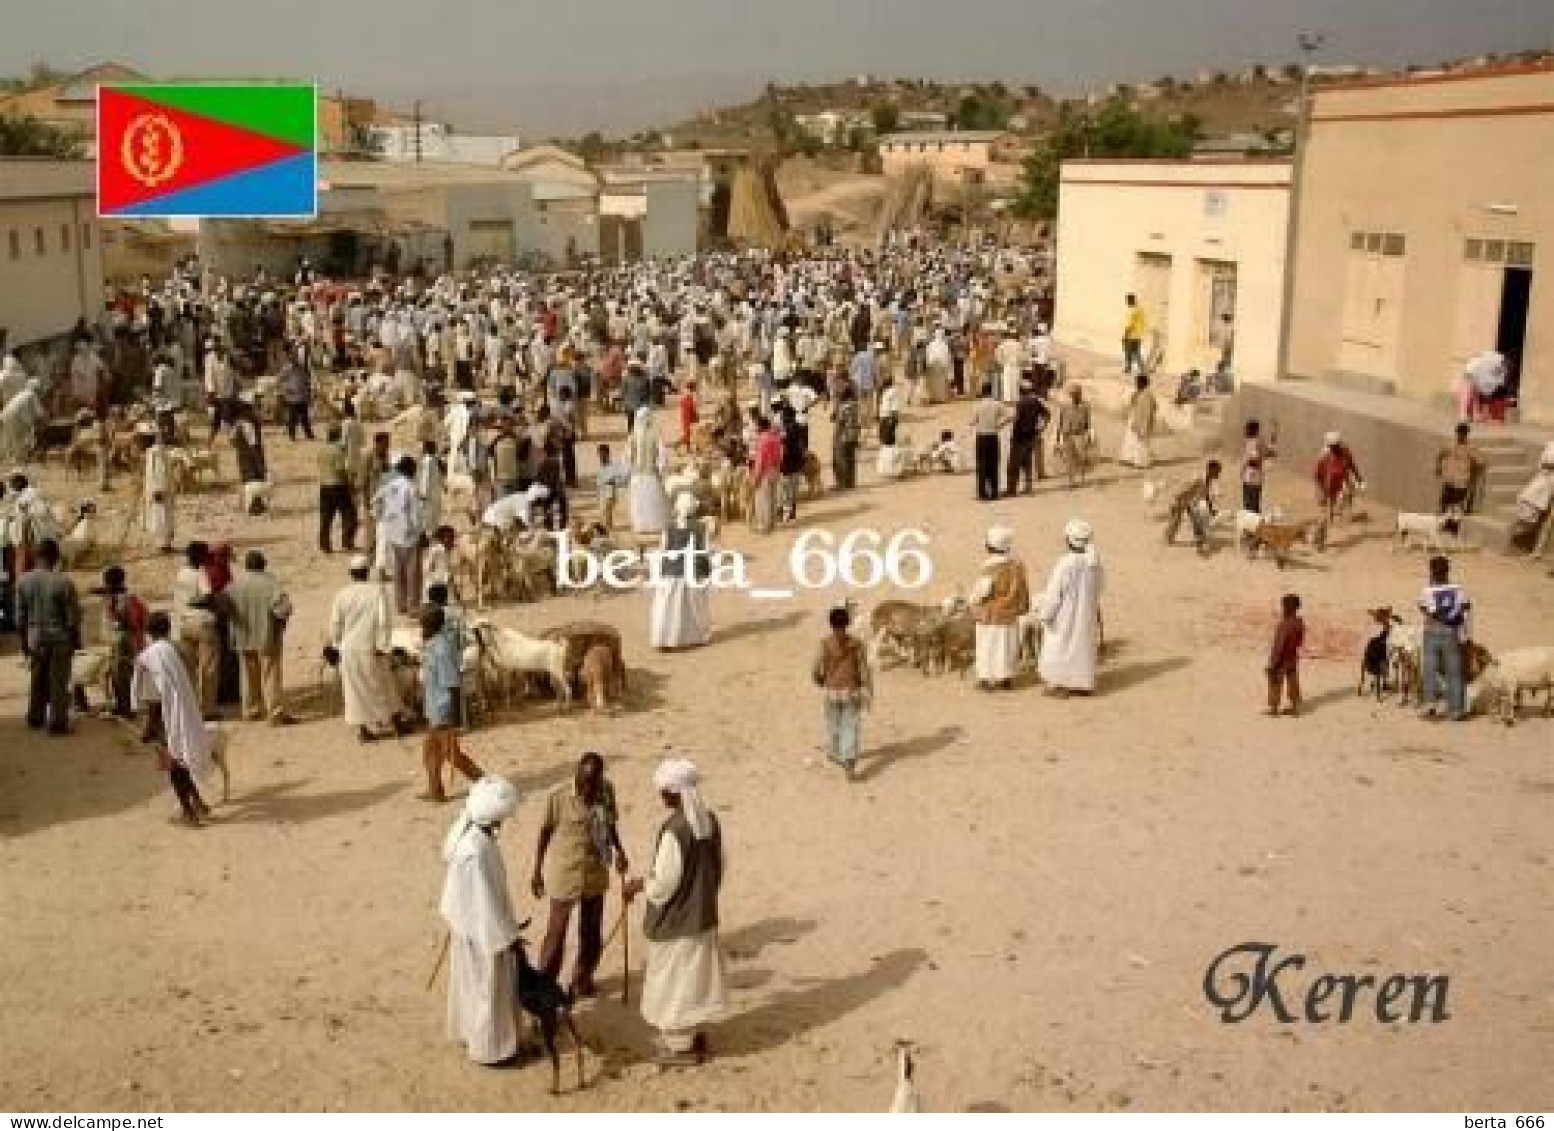 Eritrea Keren Market New Postcard - Eritrea